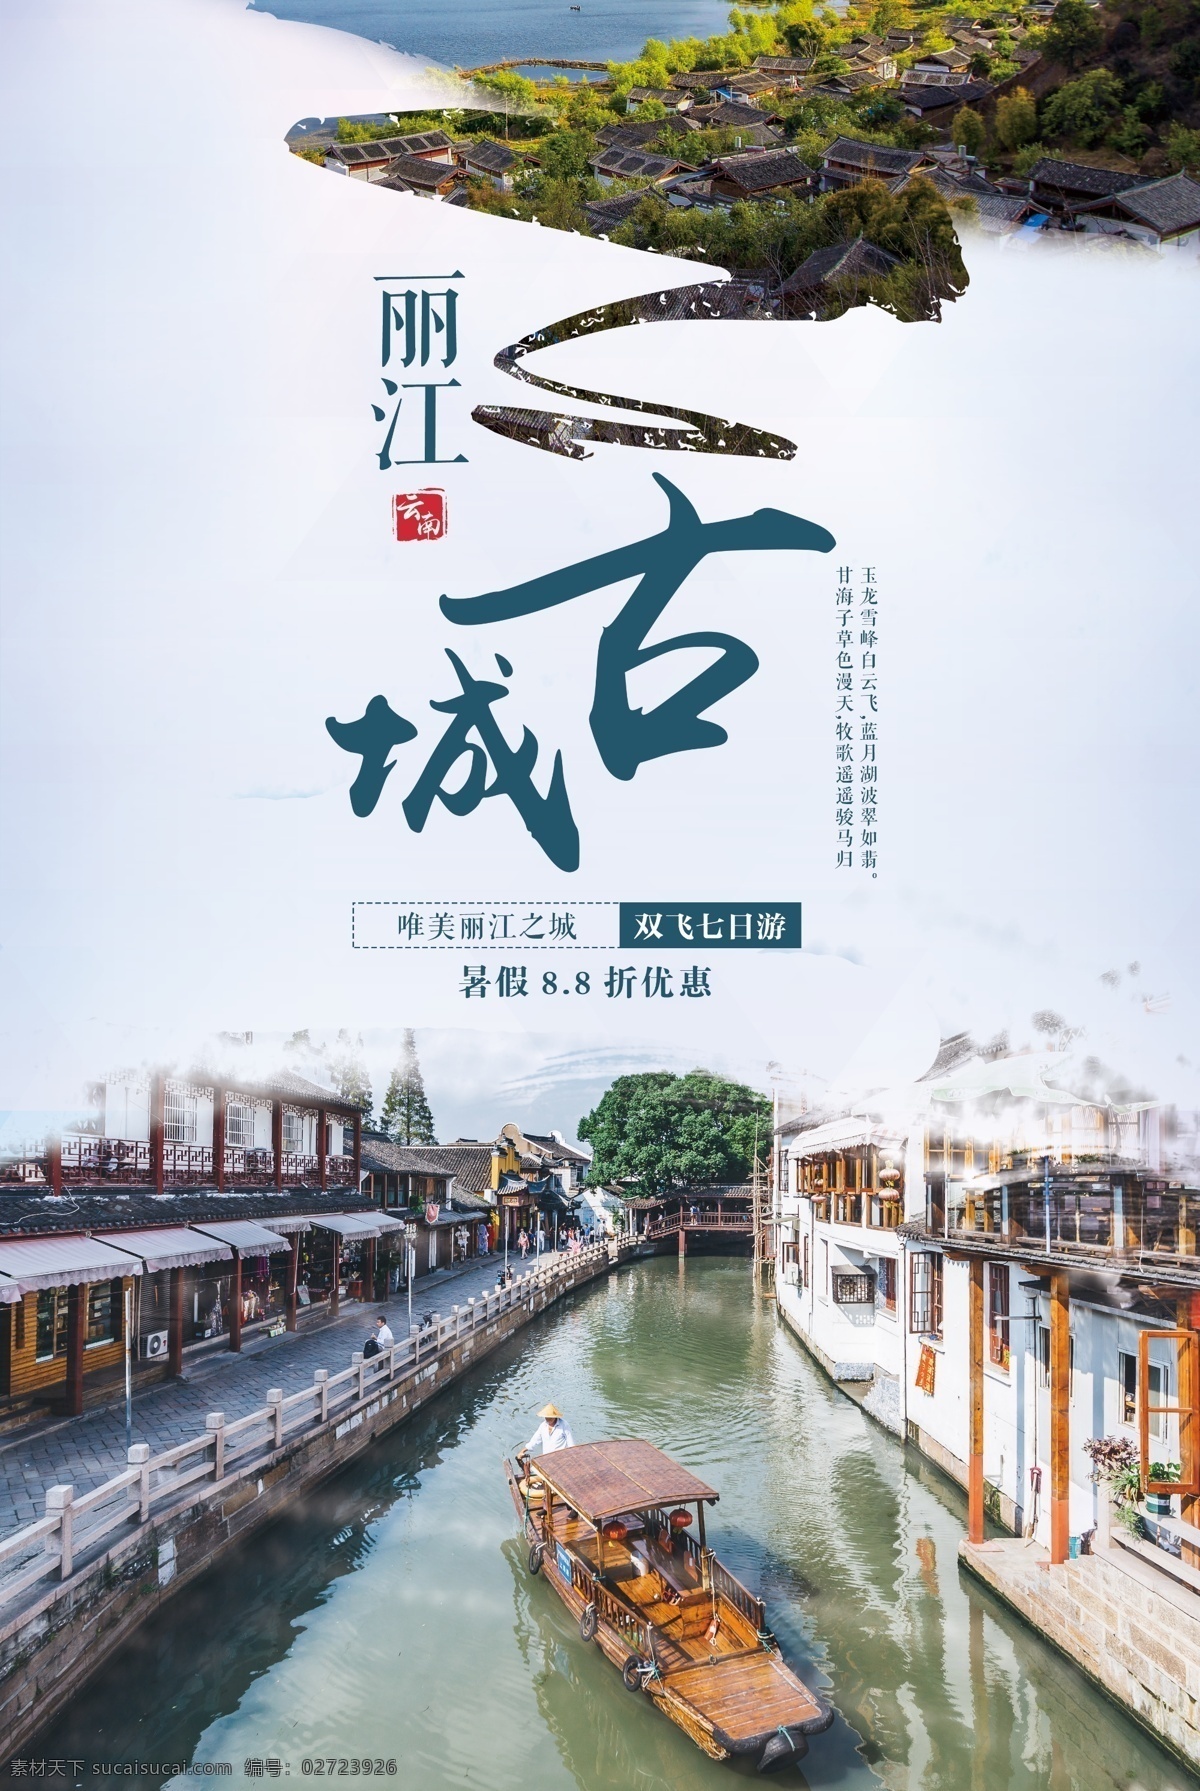 丽江旅游 旅行 宣传海报 素材图片 丽江 旅游 宣传 海报